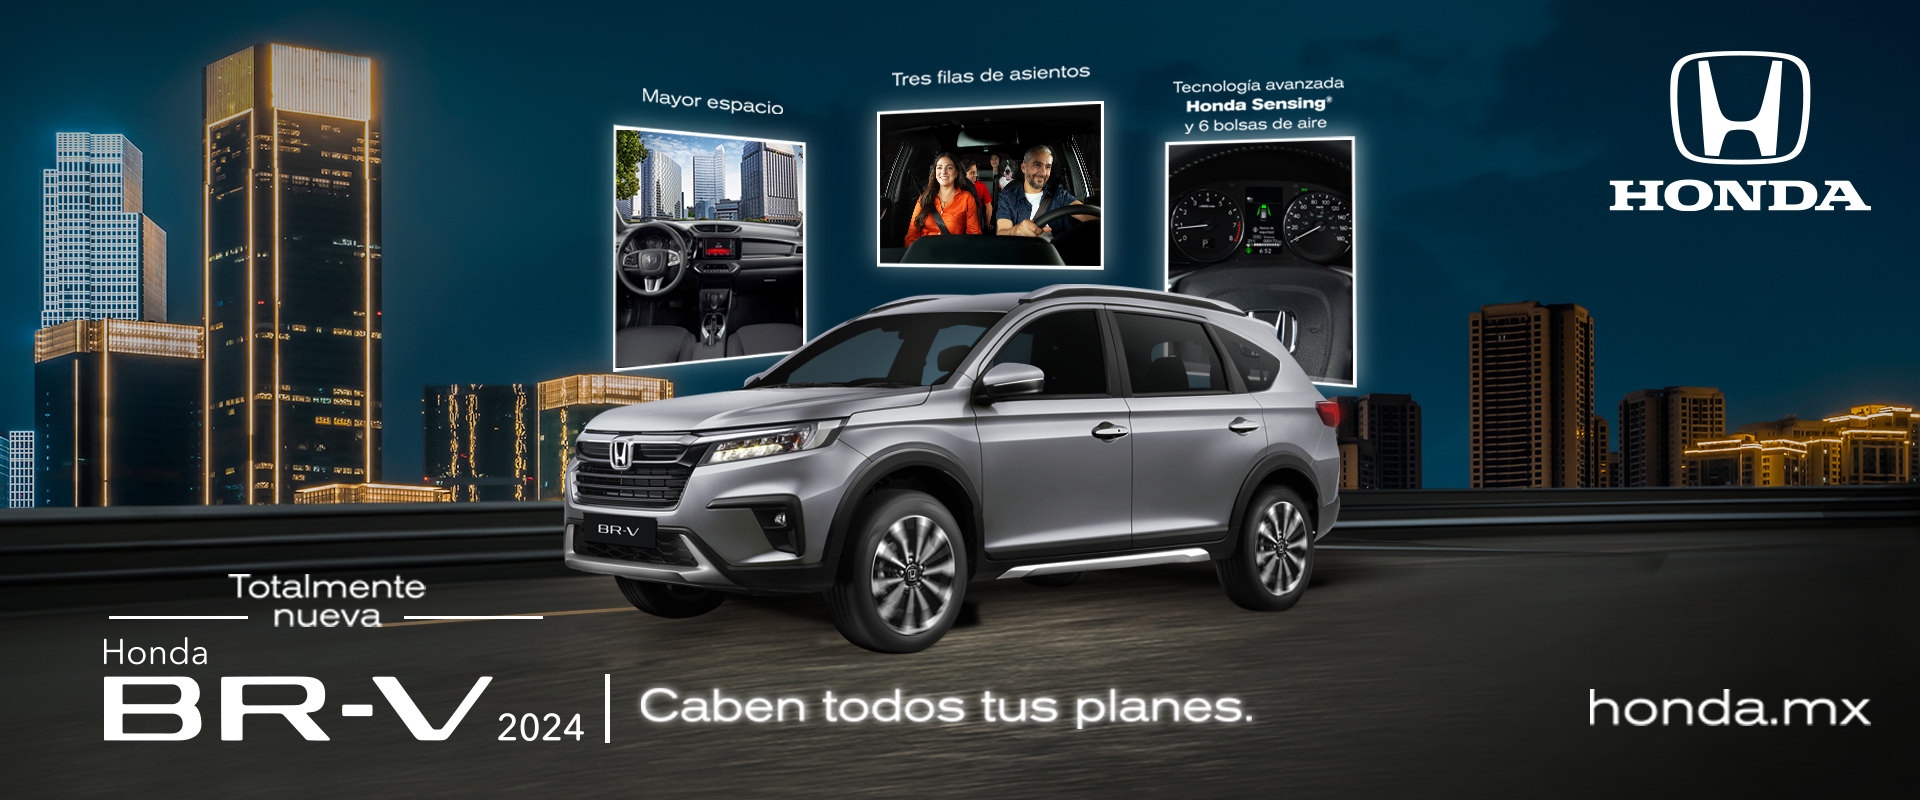 Honda autos, cotizaciones, Servicios, Concesionarias oficiales, Test Drive  en México